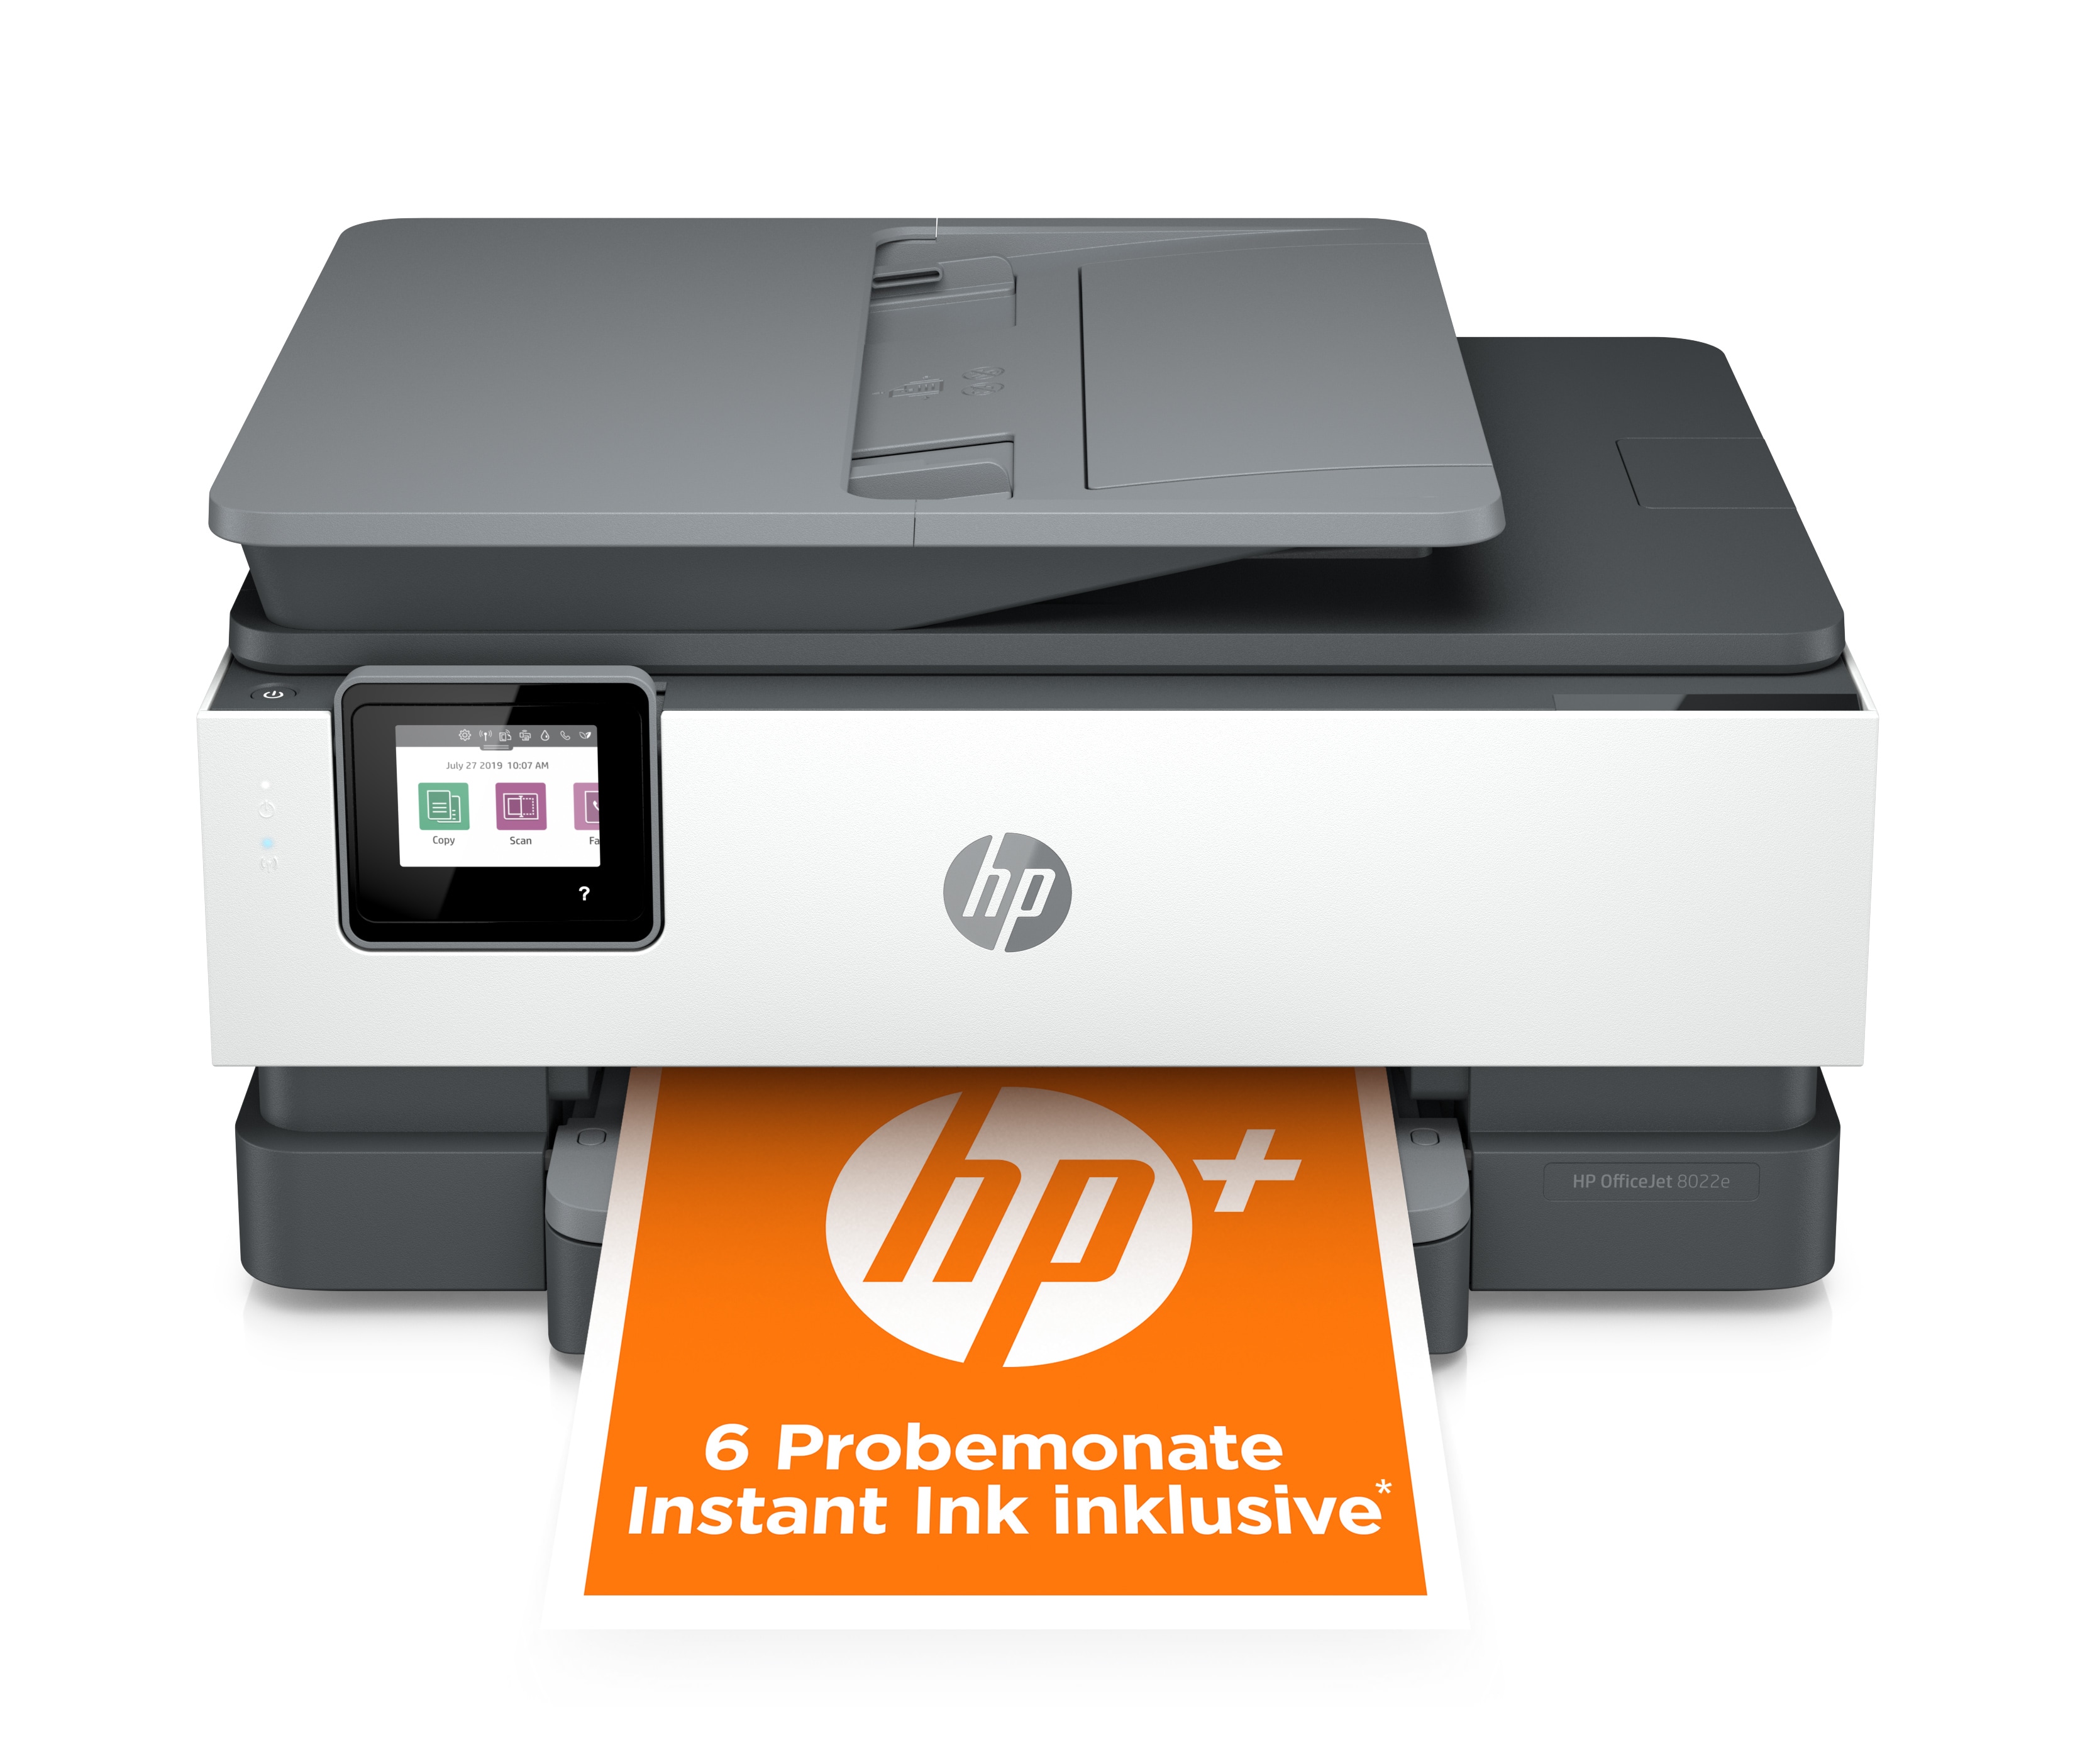 HP Drucker günstig kaufen Cyberport | online